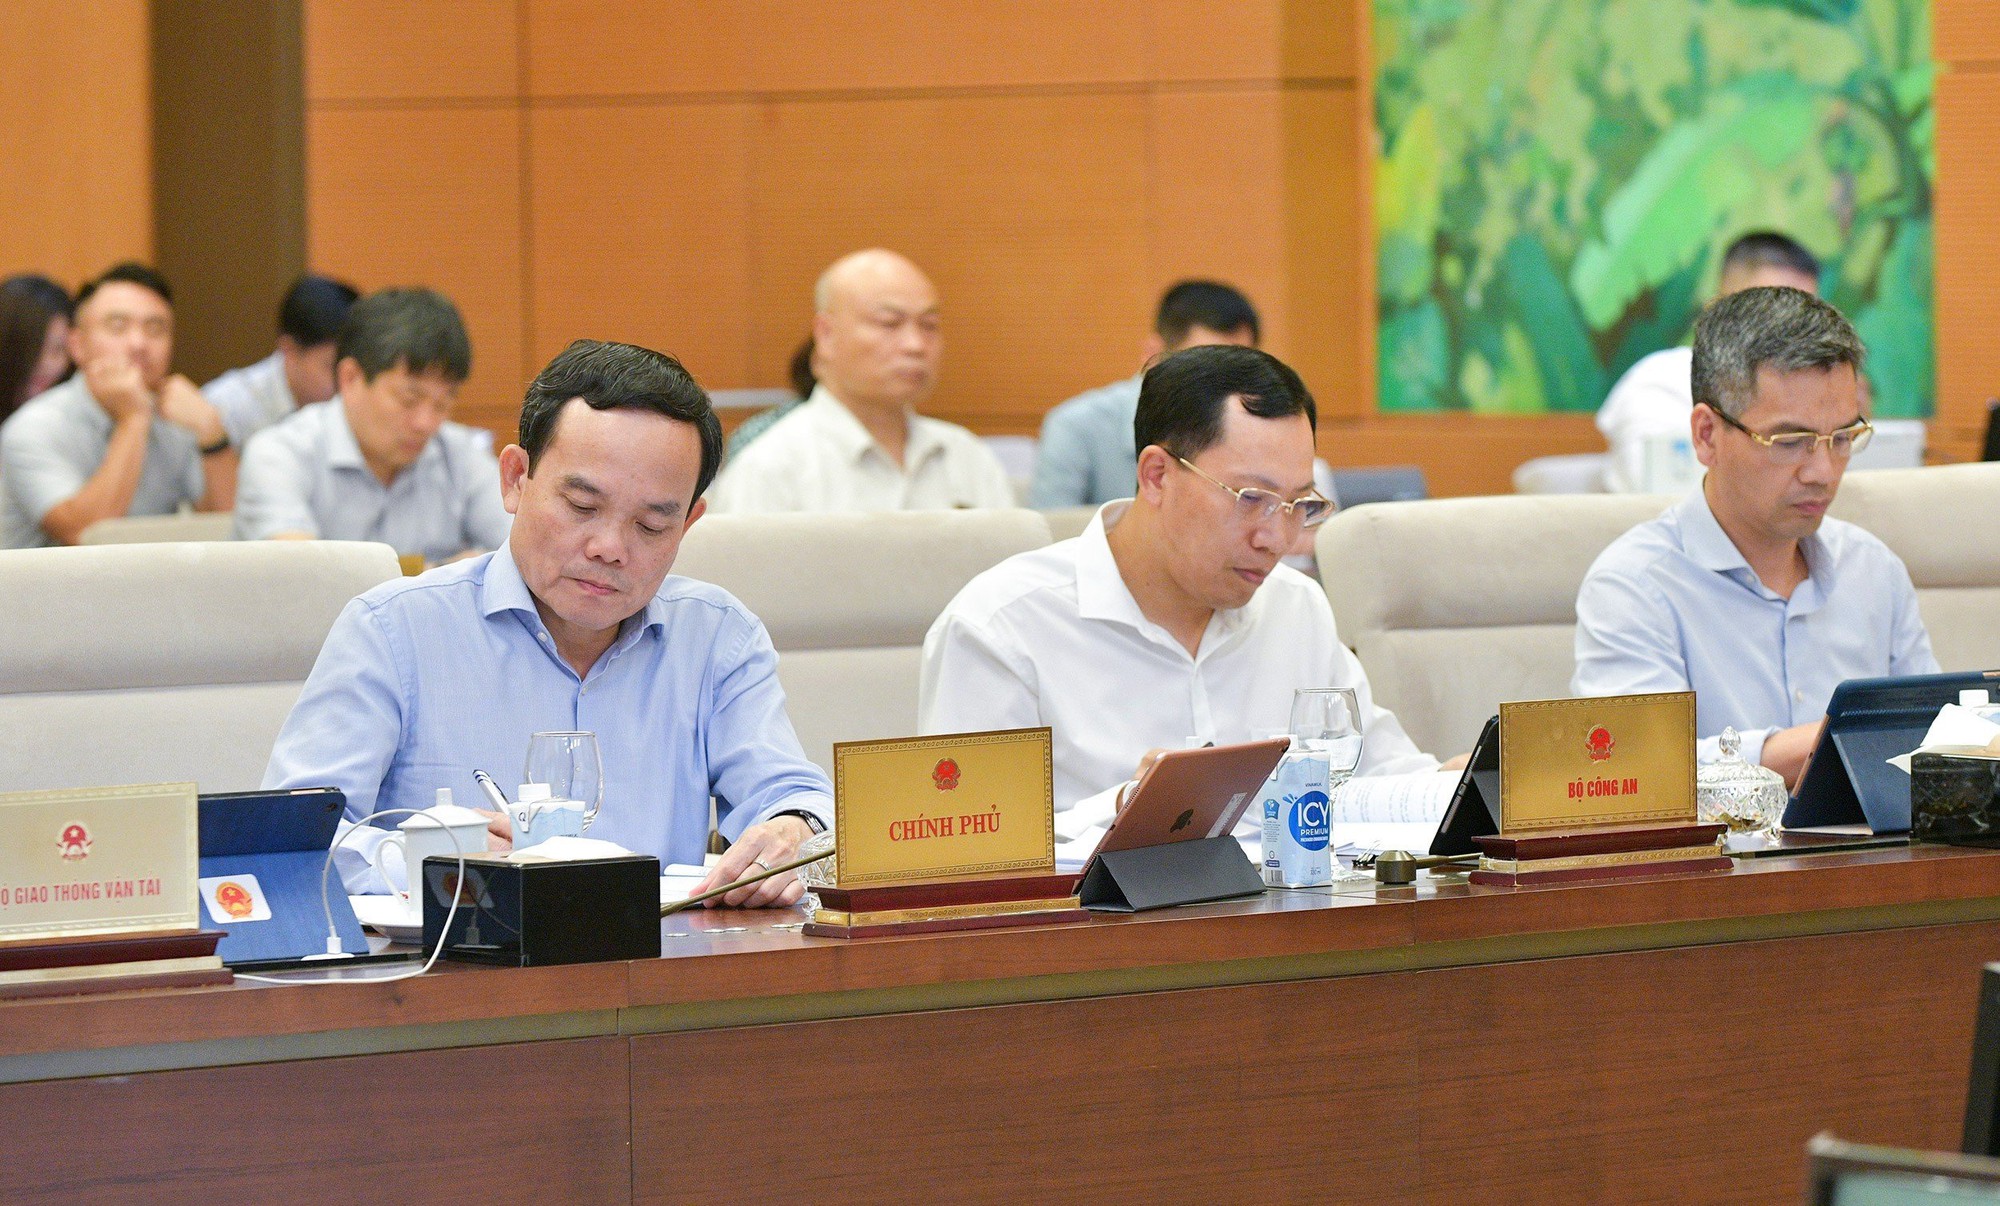 Phó thủ tướng Trần Lưu Quang: Giám sát về đảm bảo an toàn giao thông cần có “trọng tâm, trọng điểm” - Ảnh 3.